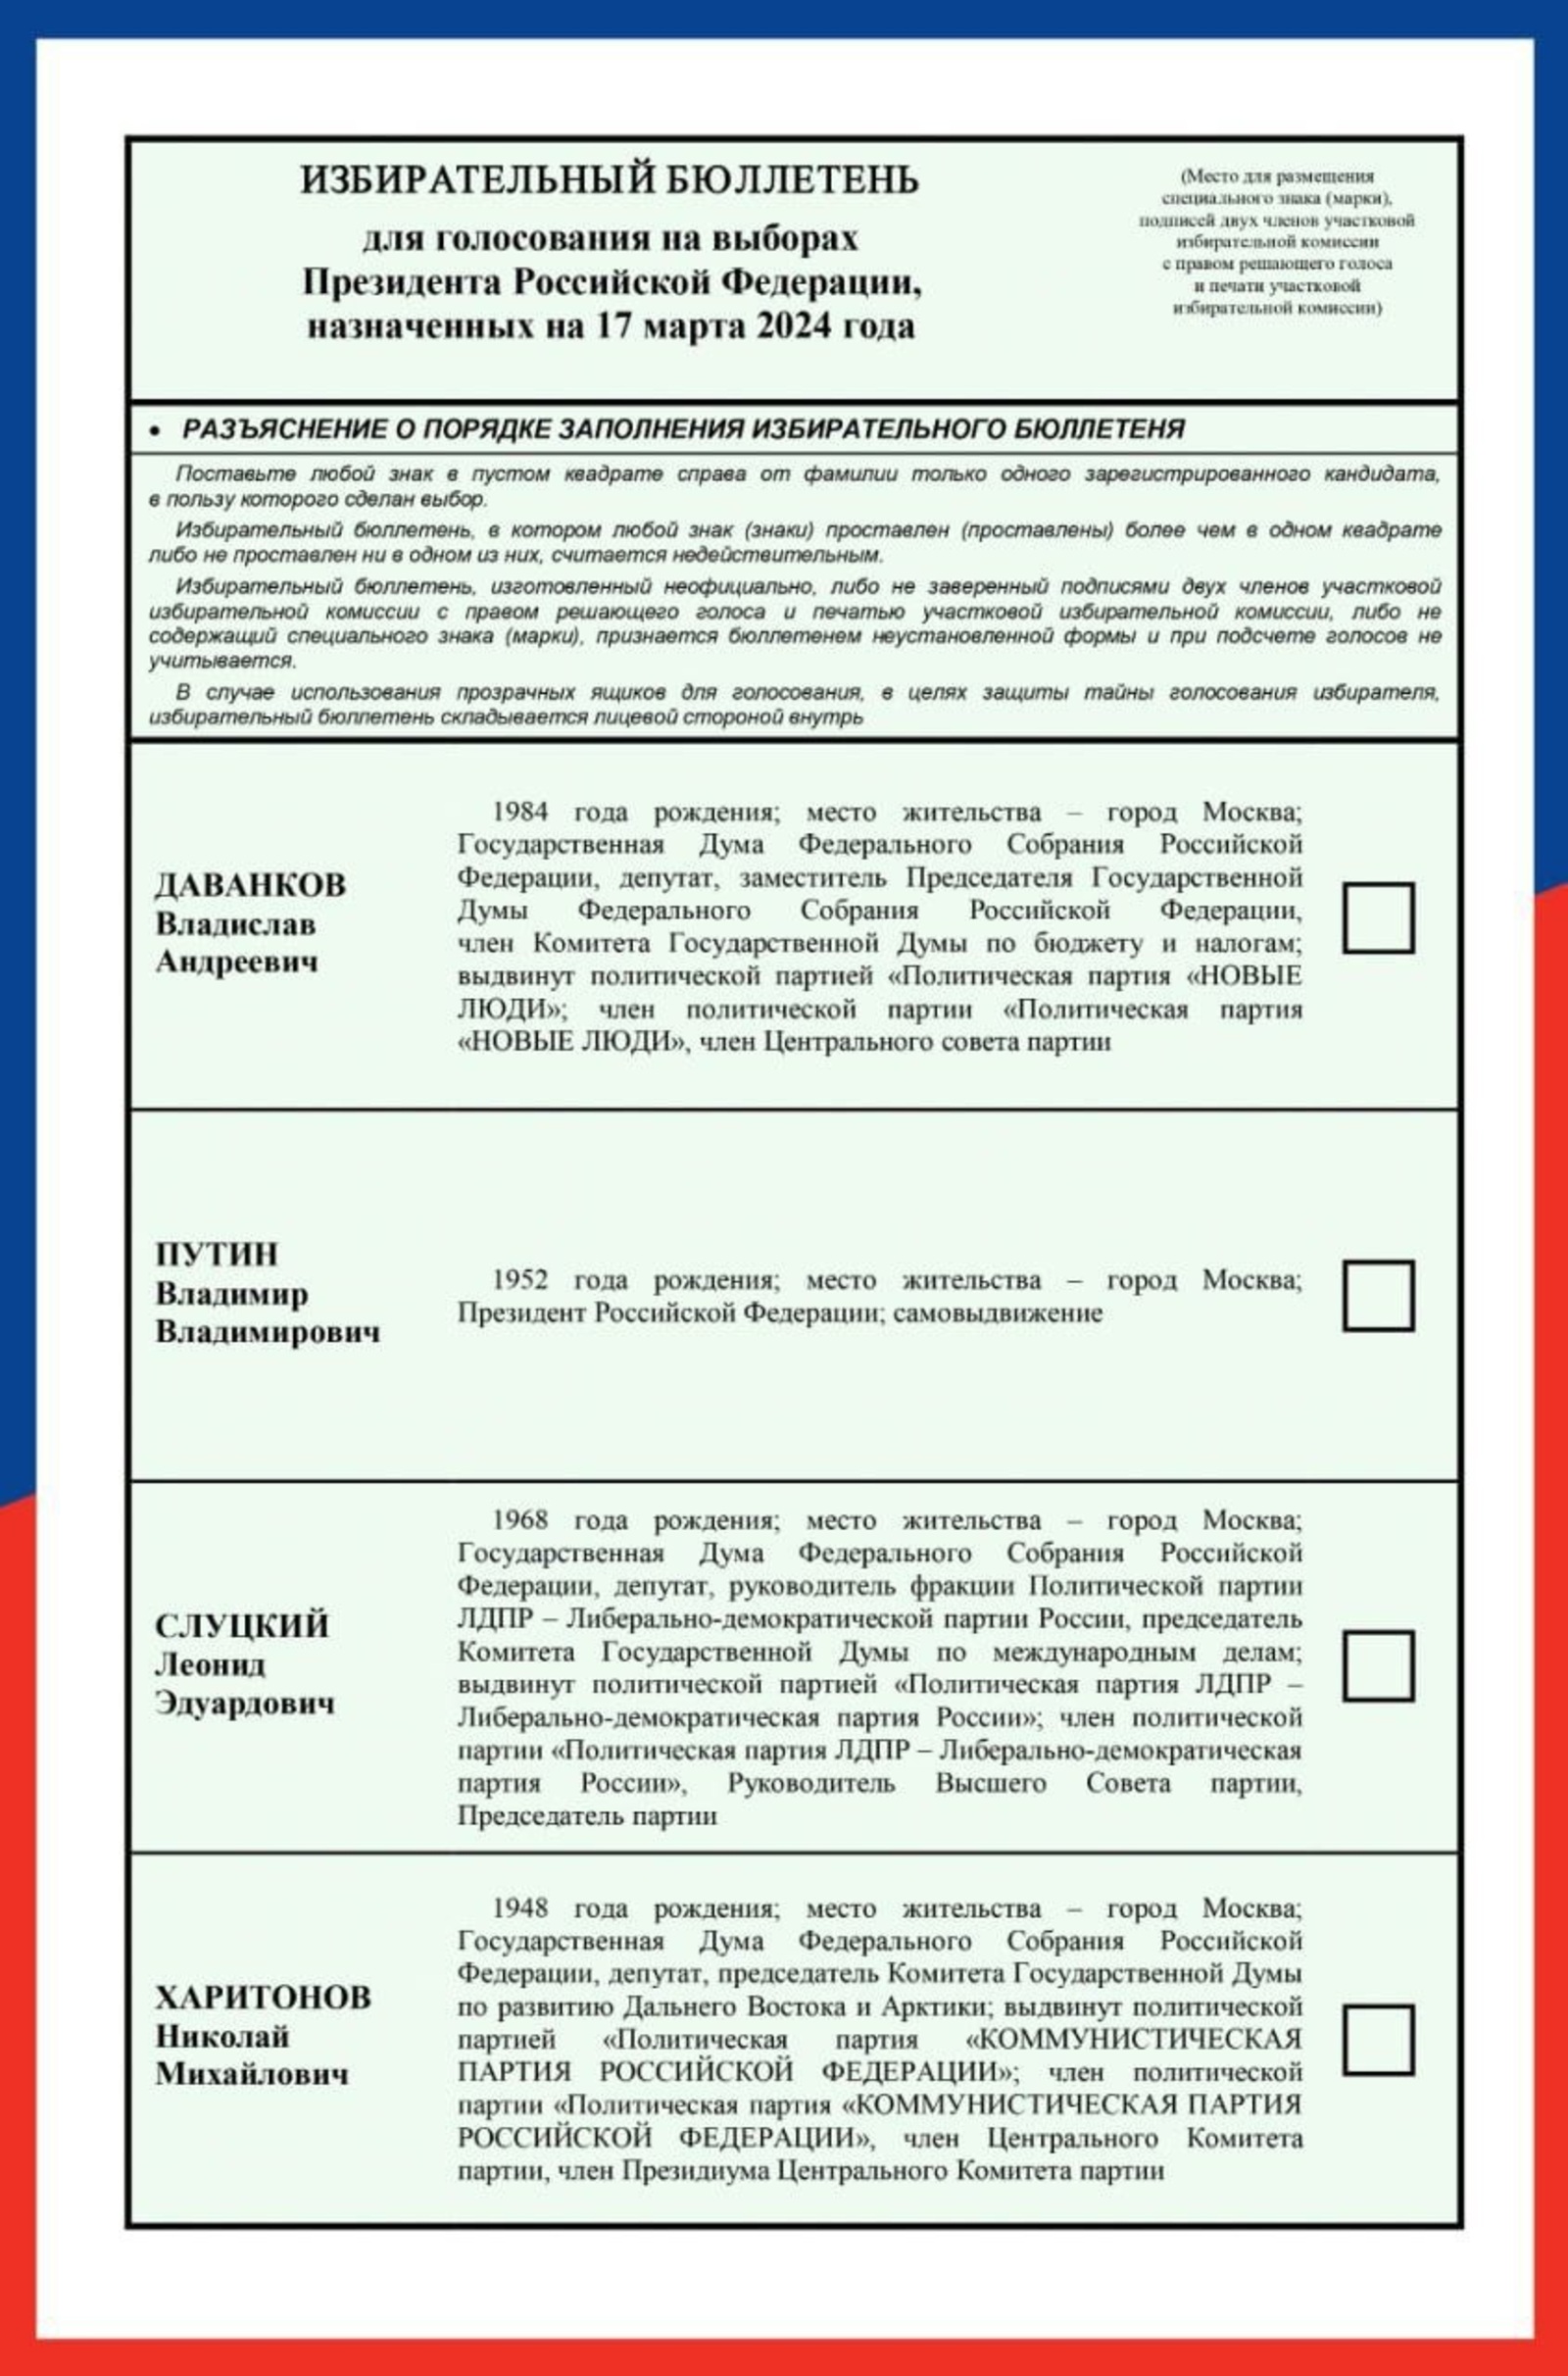 В Башкирии подписано соглашение об участии в наблюдении на выборах президента России